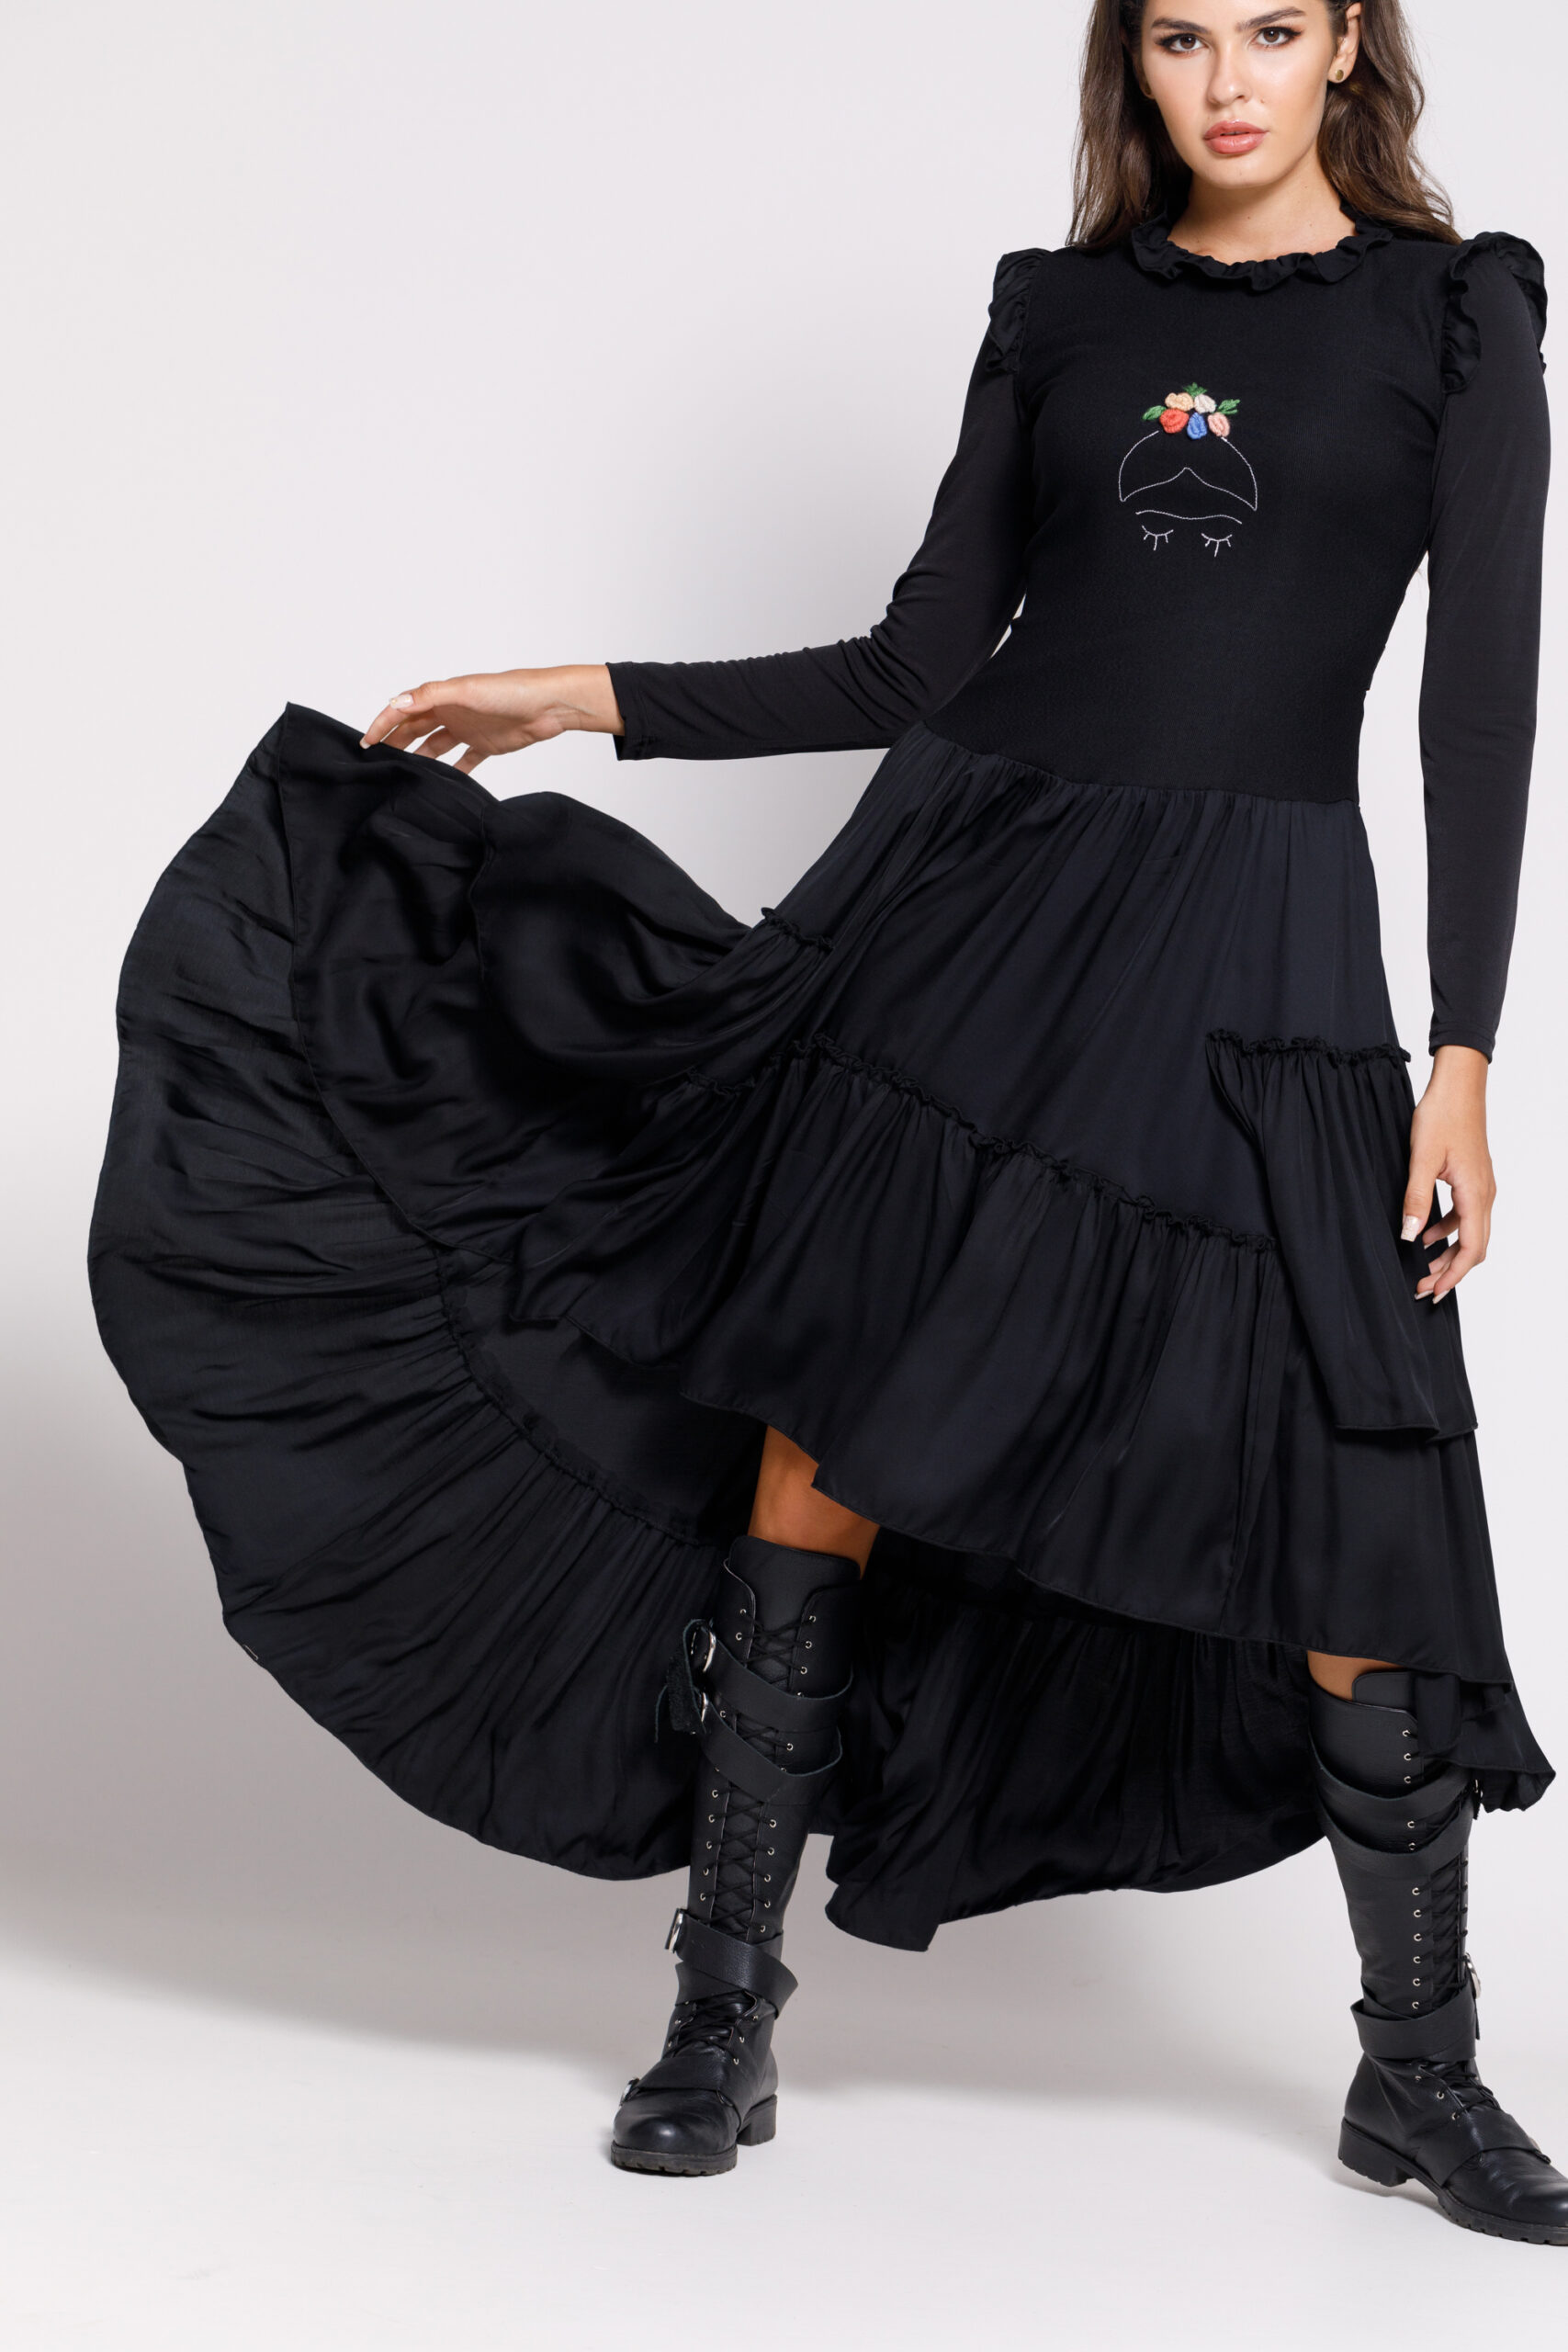 Valentino black casual dress with asymmetric length. Natural fabrics, original design, handmade embroidery